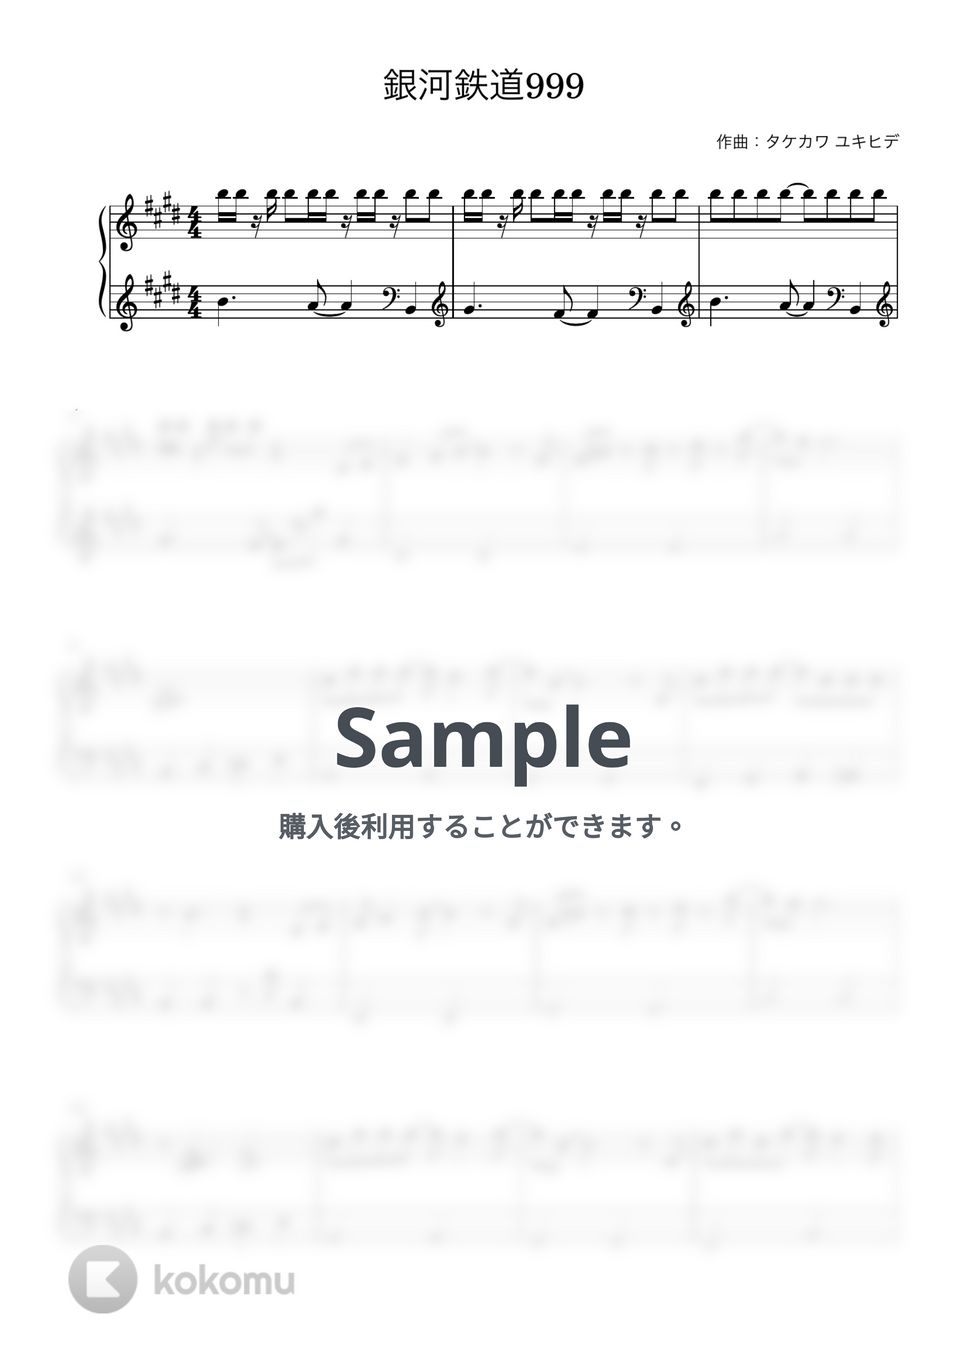 ゴダイゴ - 銀河鉄道９９９ (ピアノ初心者向け) by Piano Lovers. jp